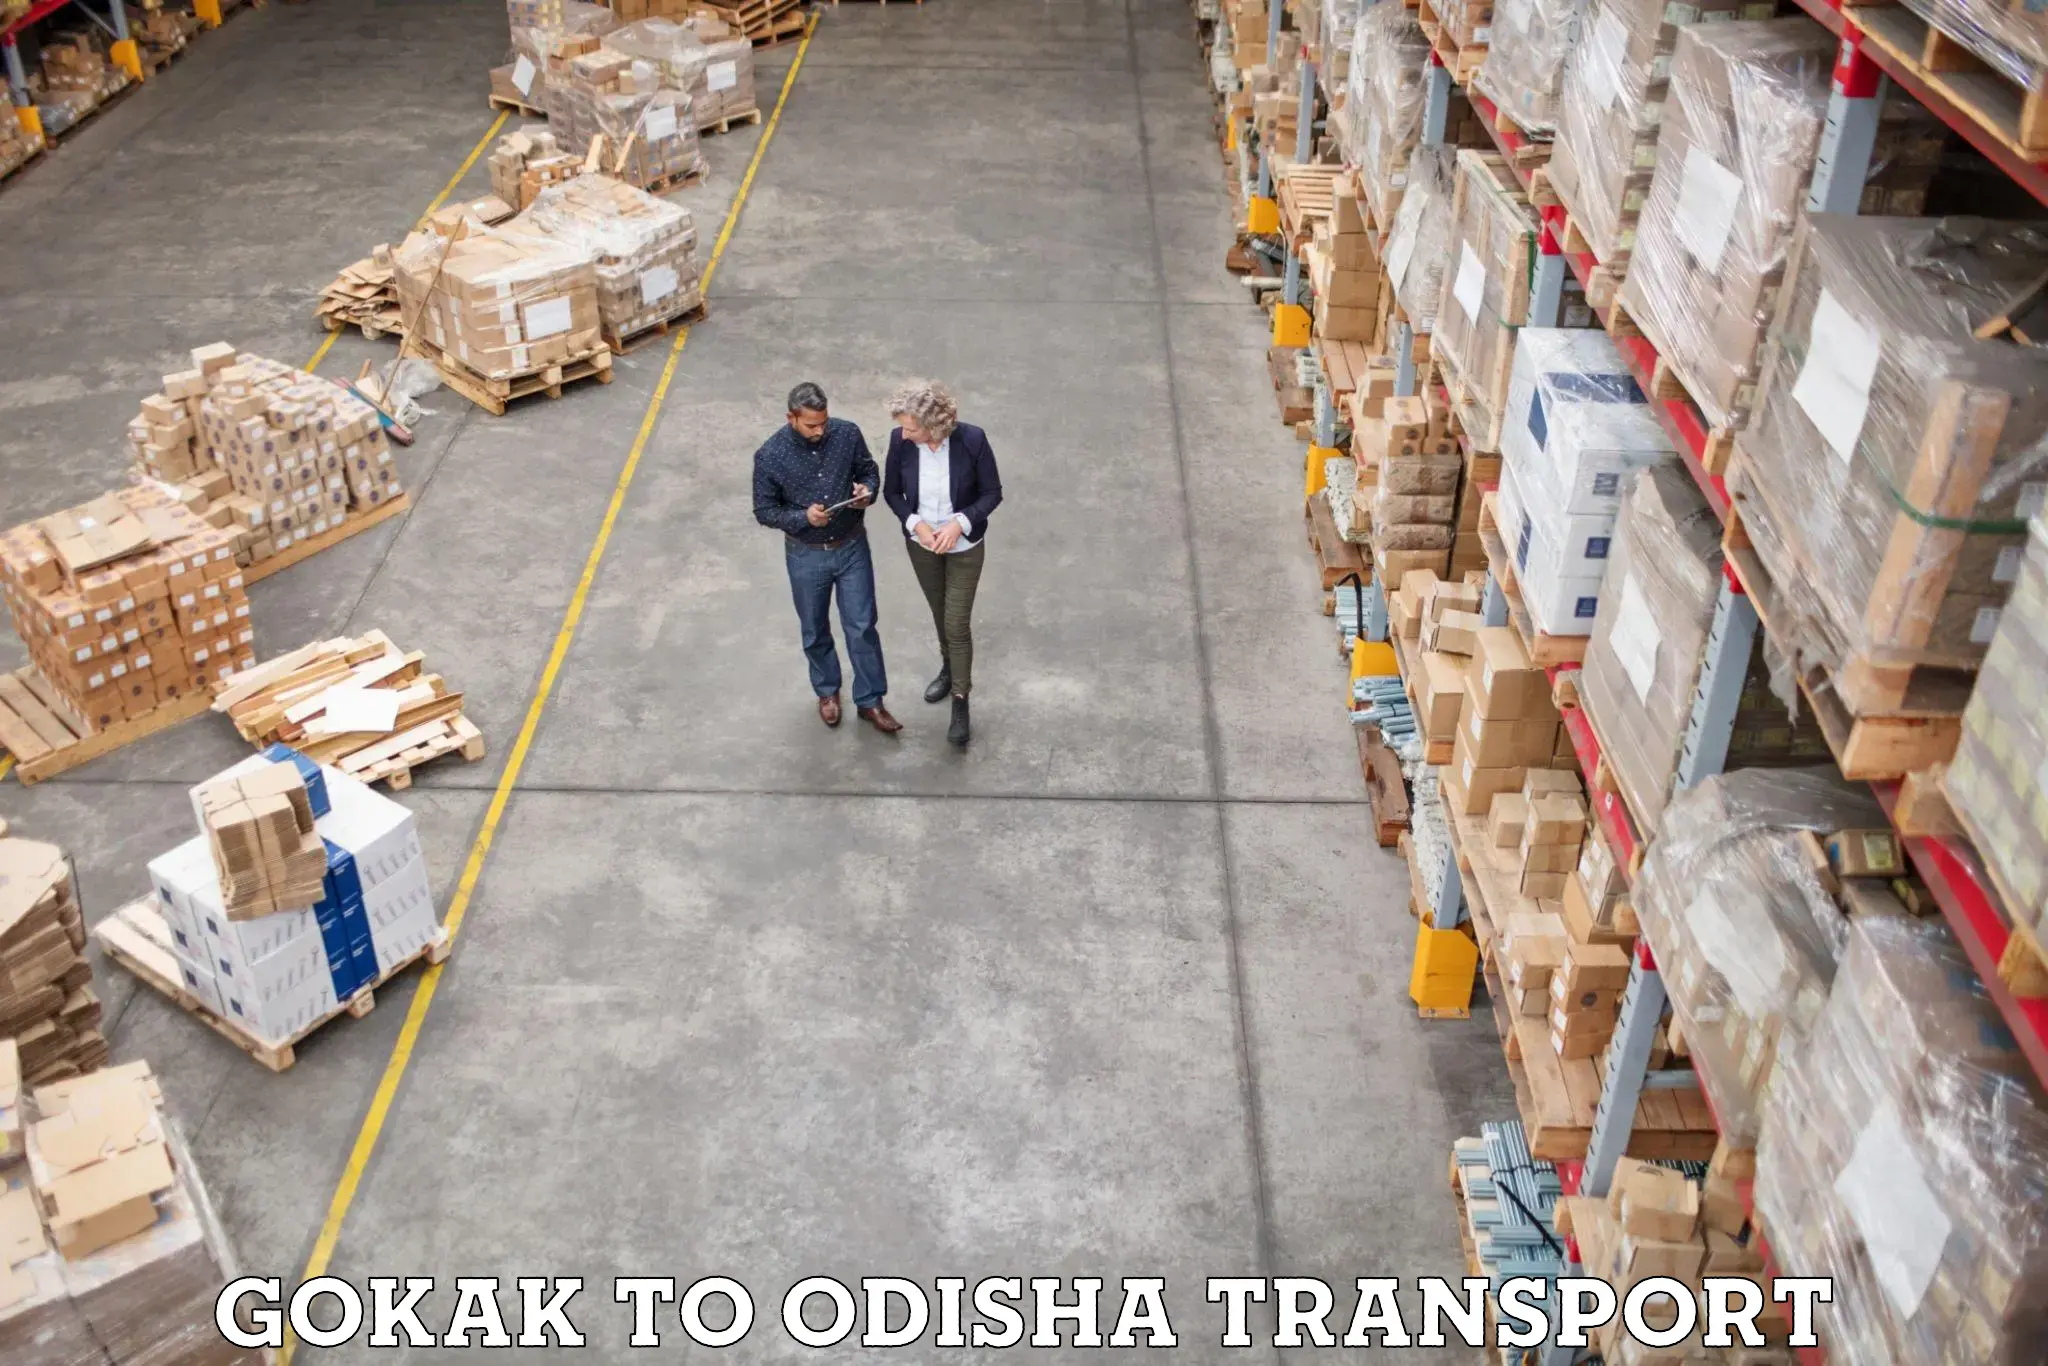 Commercial transport service Gokak to Bissam Cuttack